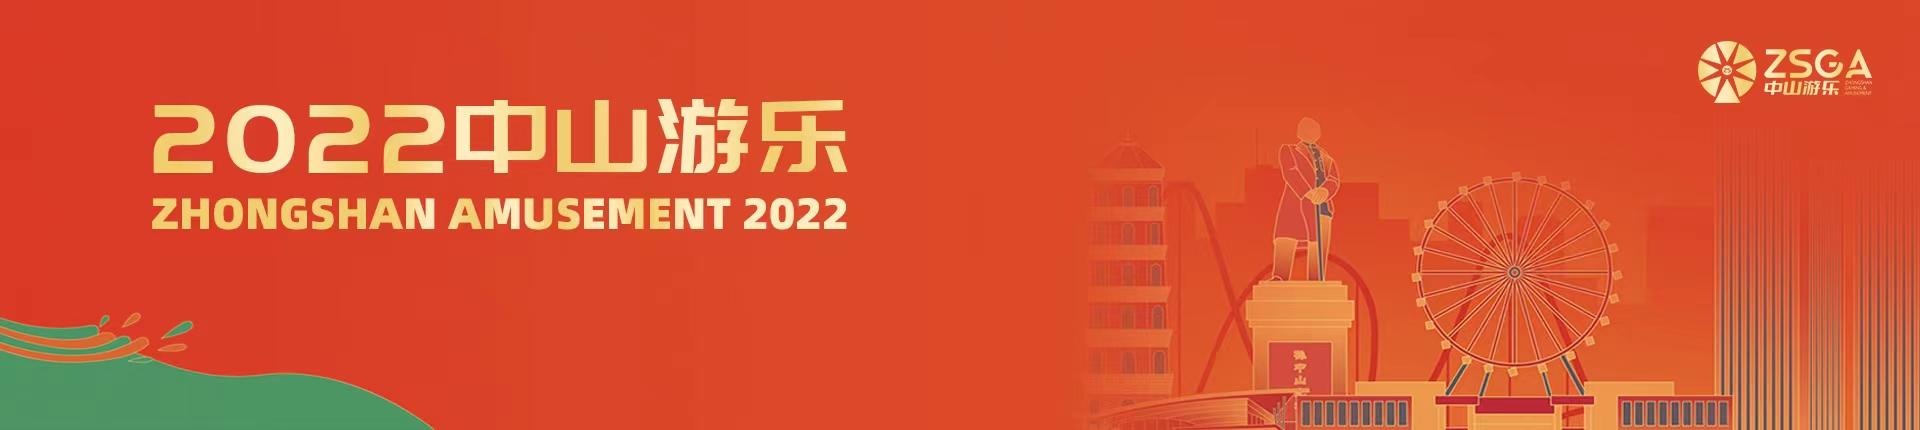 2022中山游乐